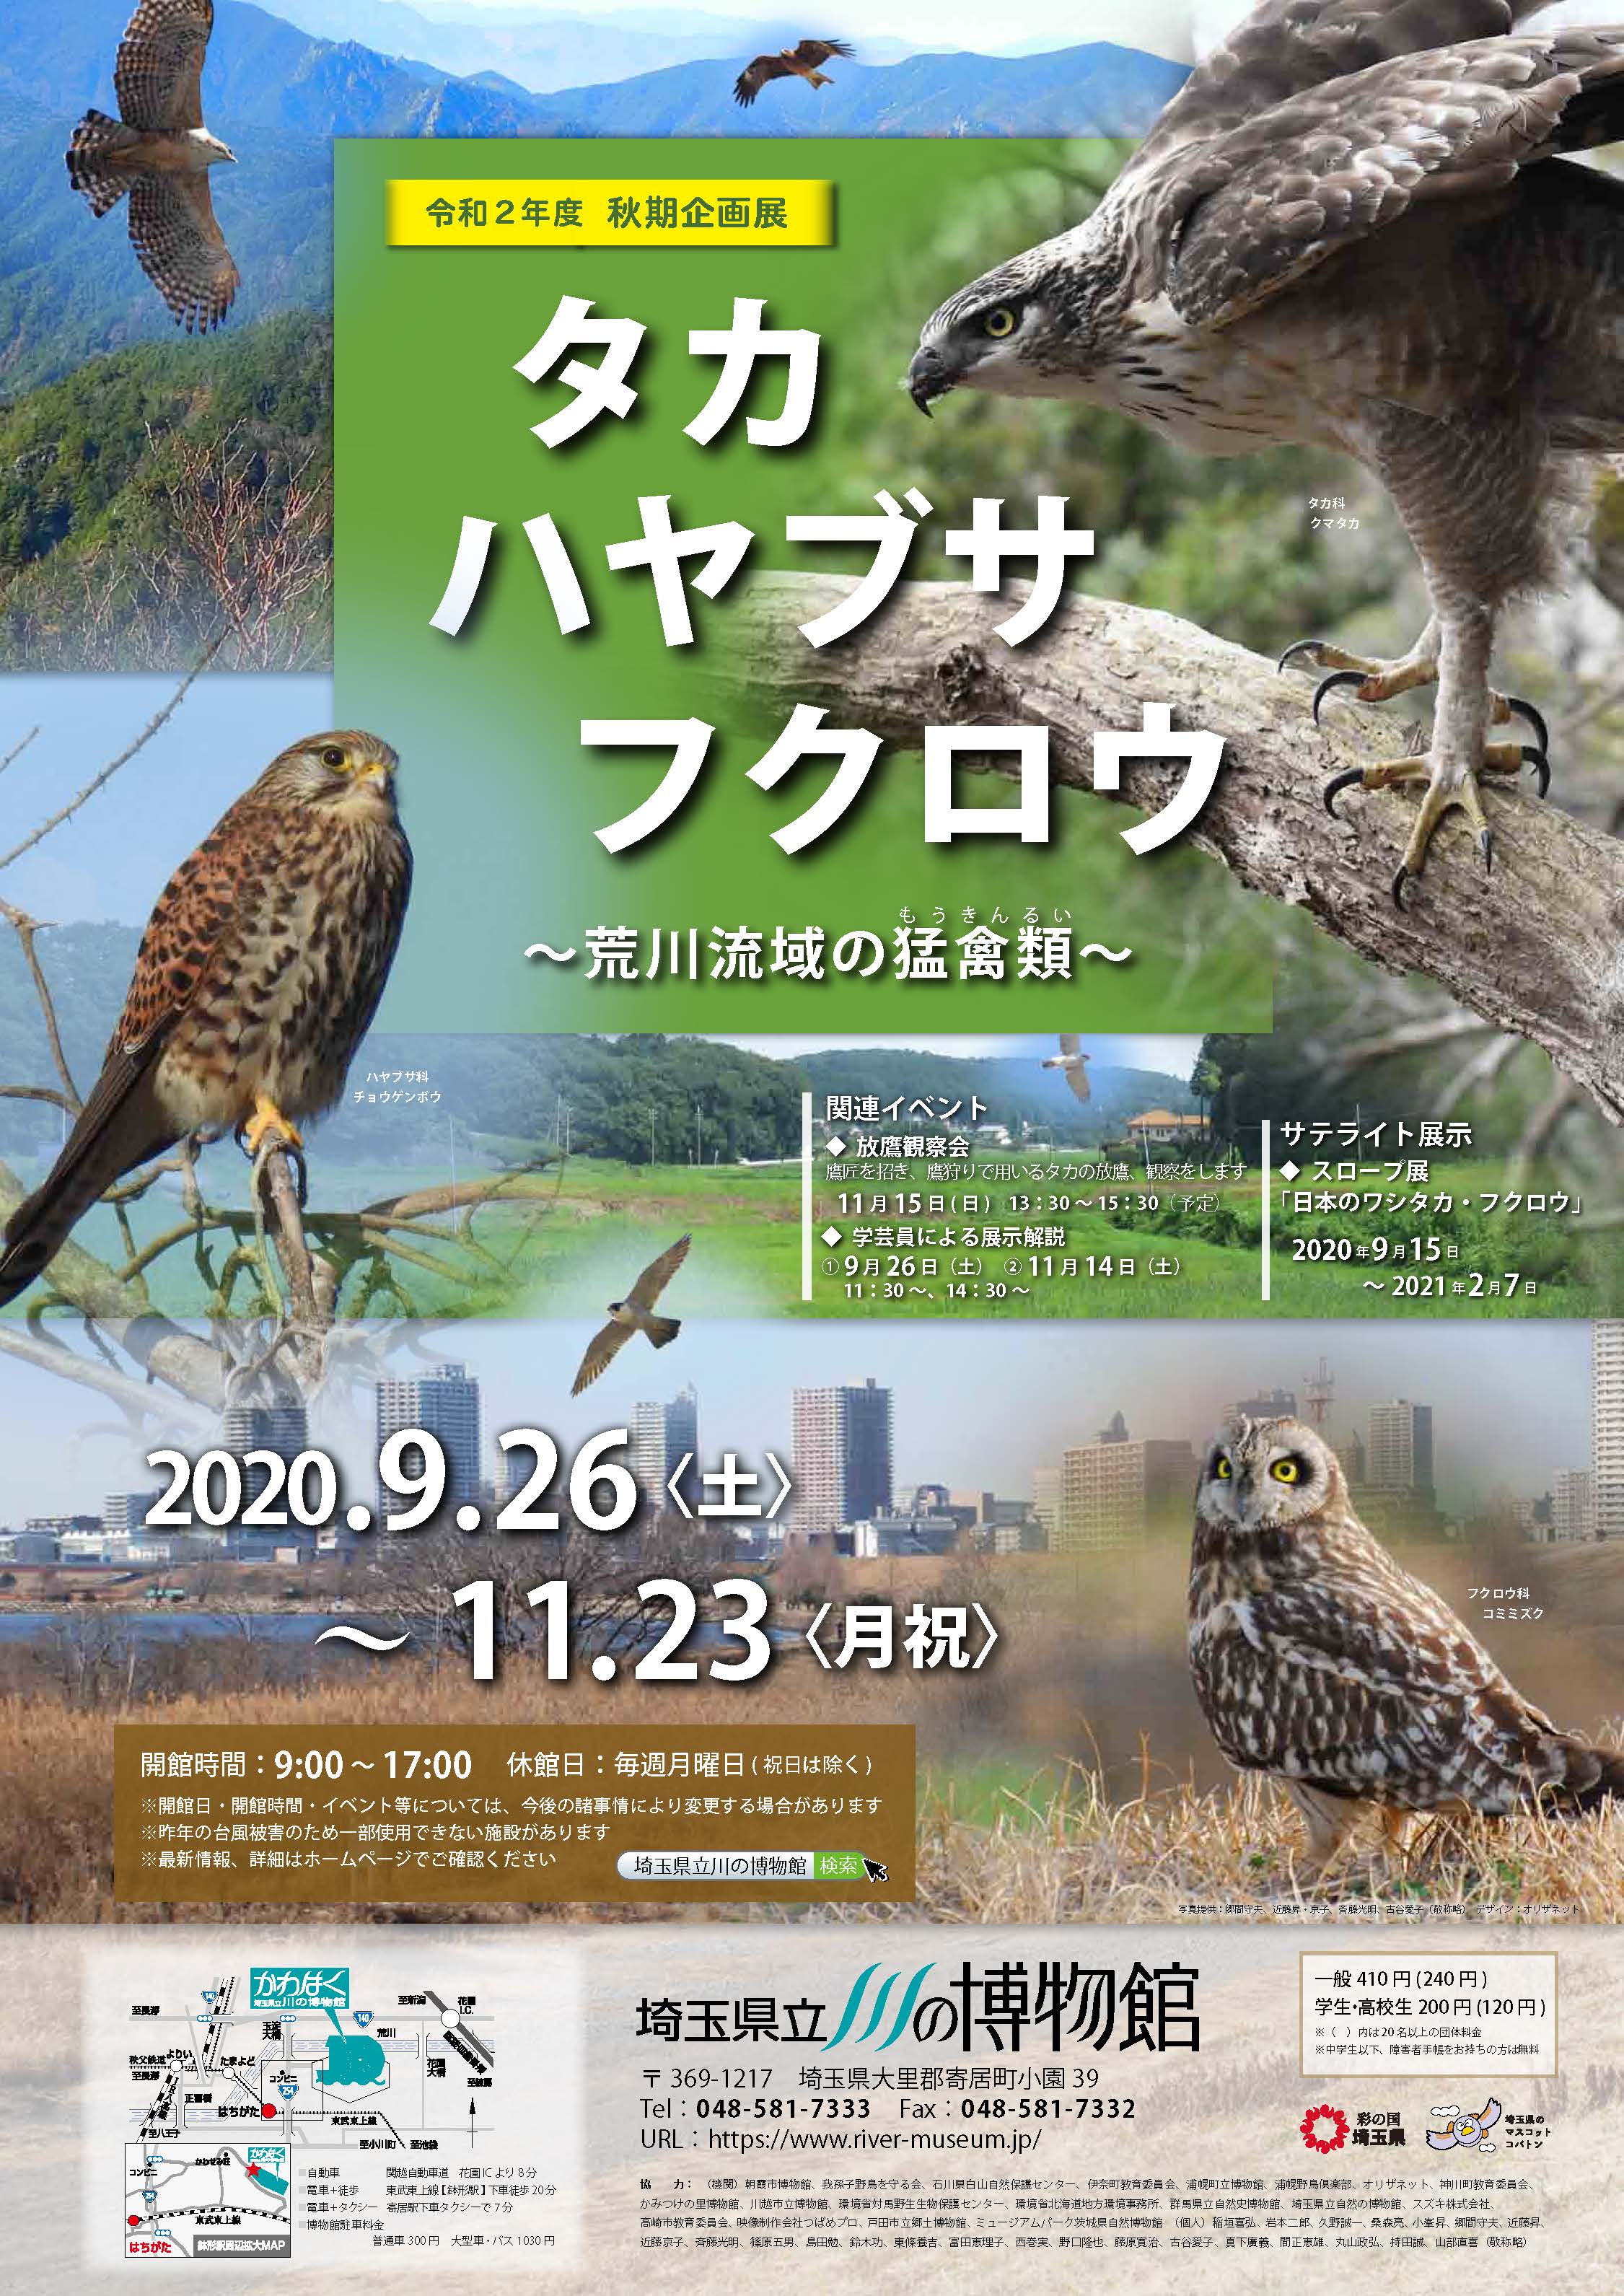 タカ ハヤブサ フクロウ 荒川流域の猛禽類 埼玉県立川の博物館 かわはく